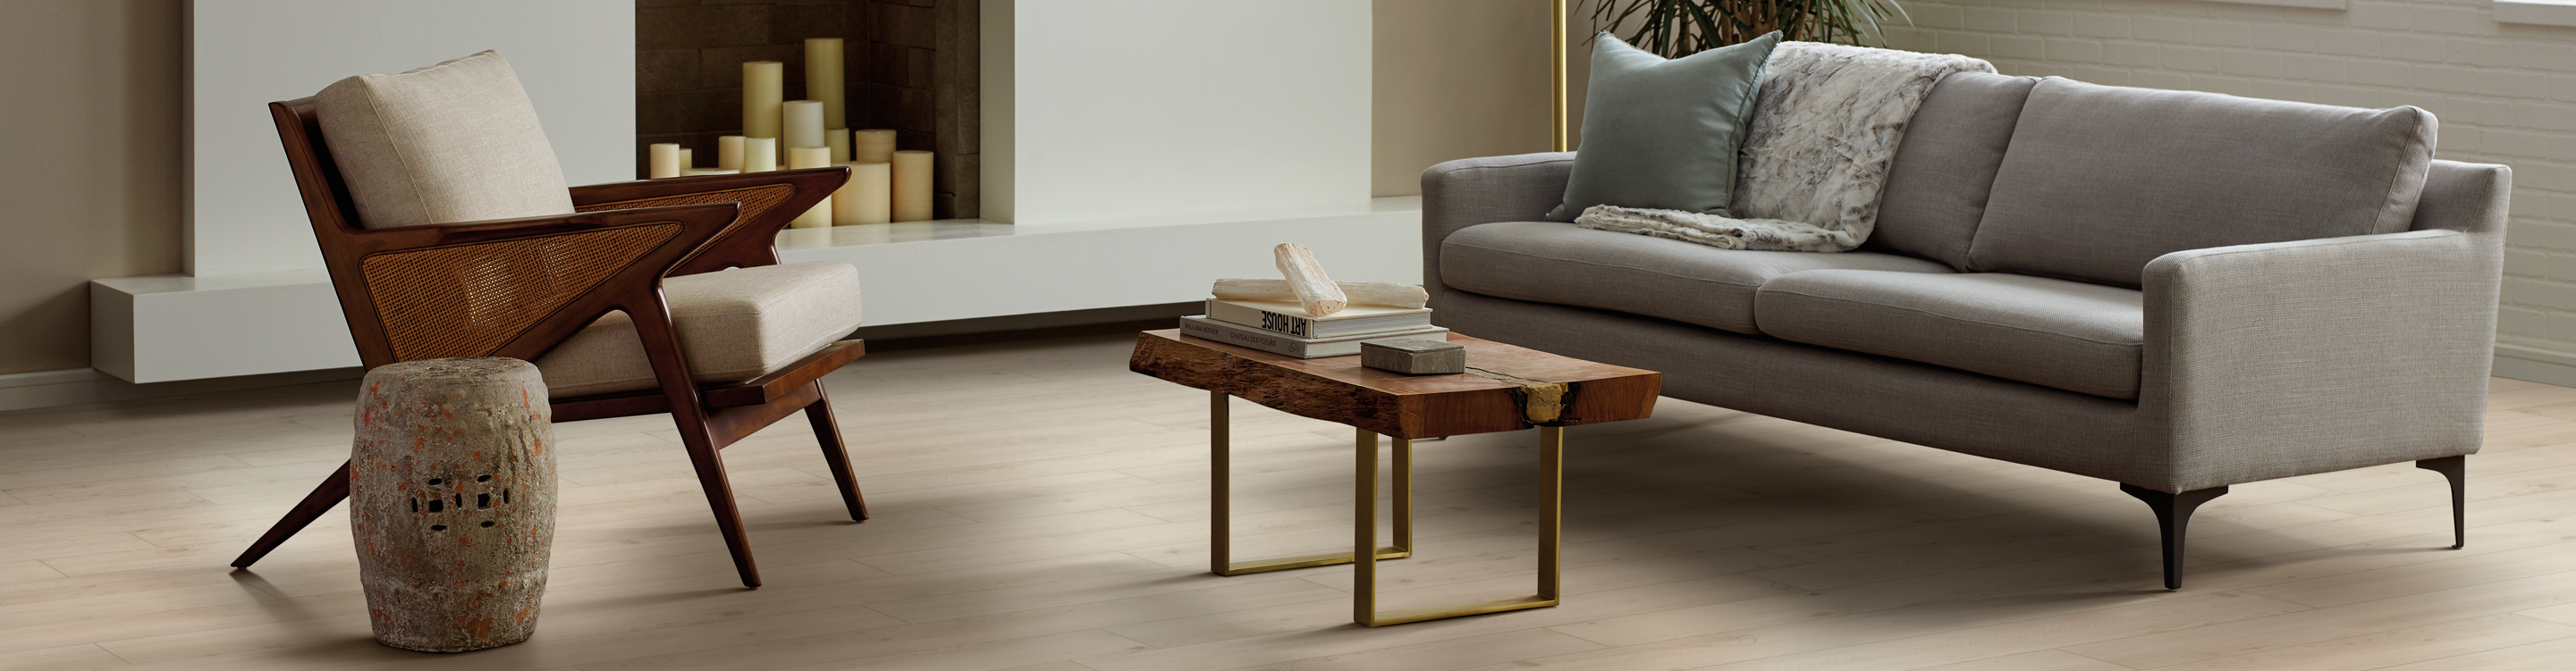 Luxury vinyl flooring in modern living room